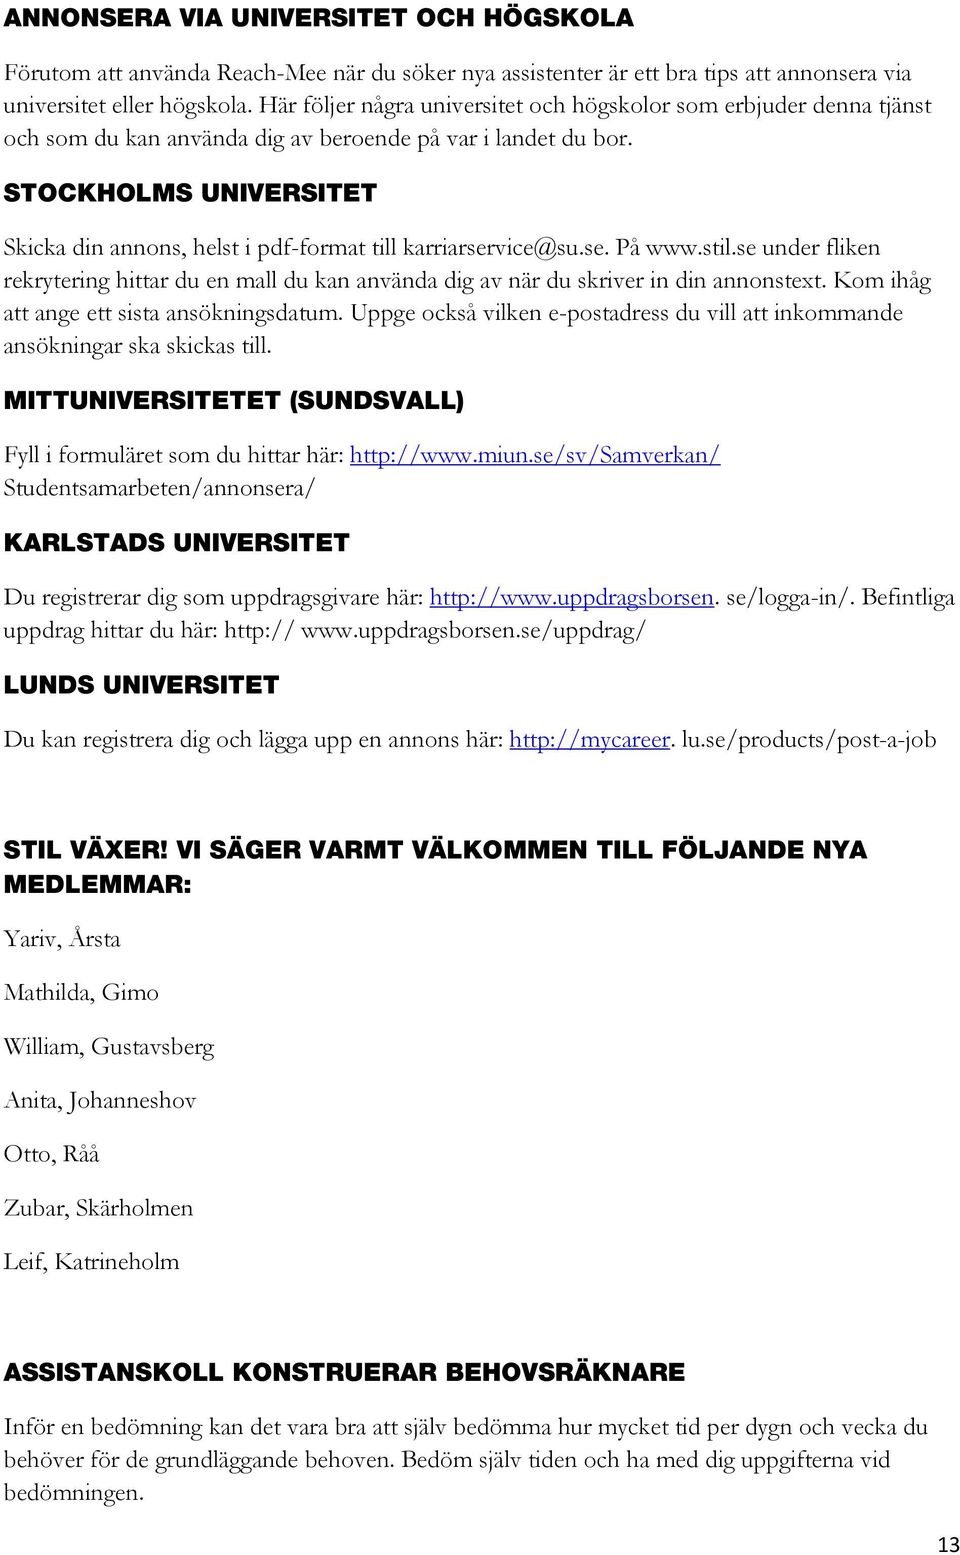 STOCKHOLMS UNIVERSITET Skicka din annons, helst i pdf-format till karriarservice@su.se. På www.stil.